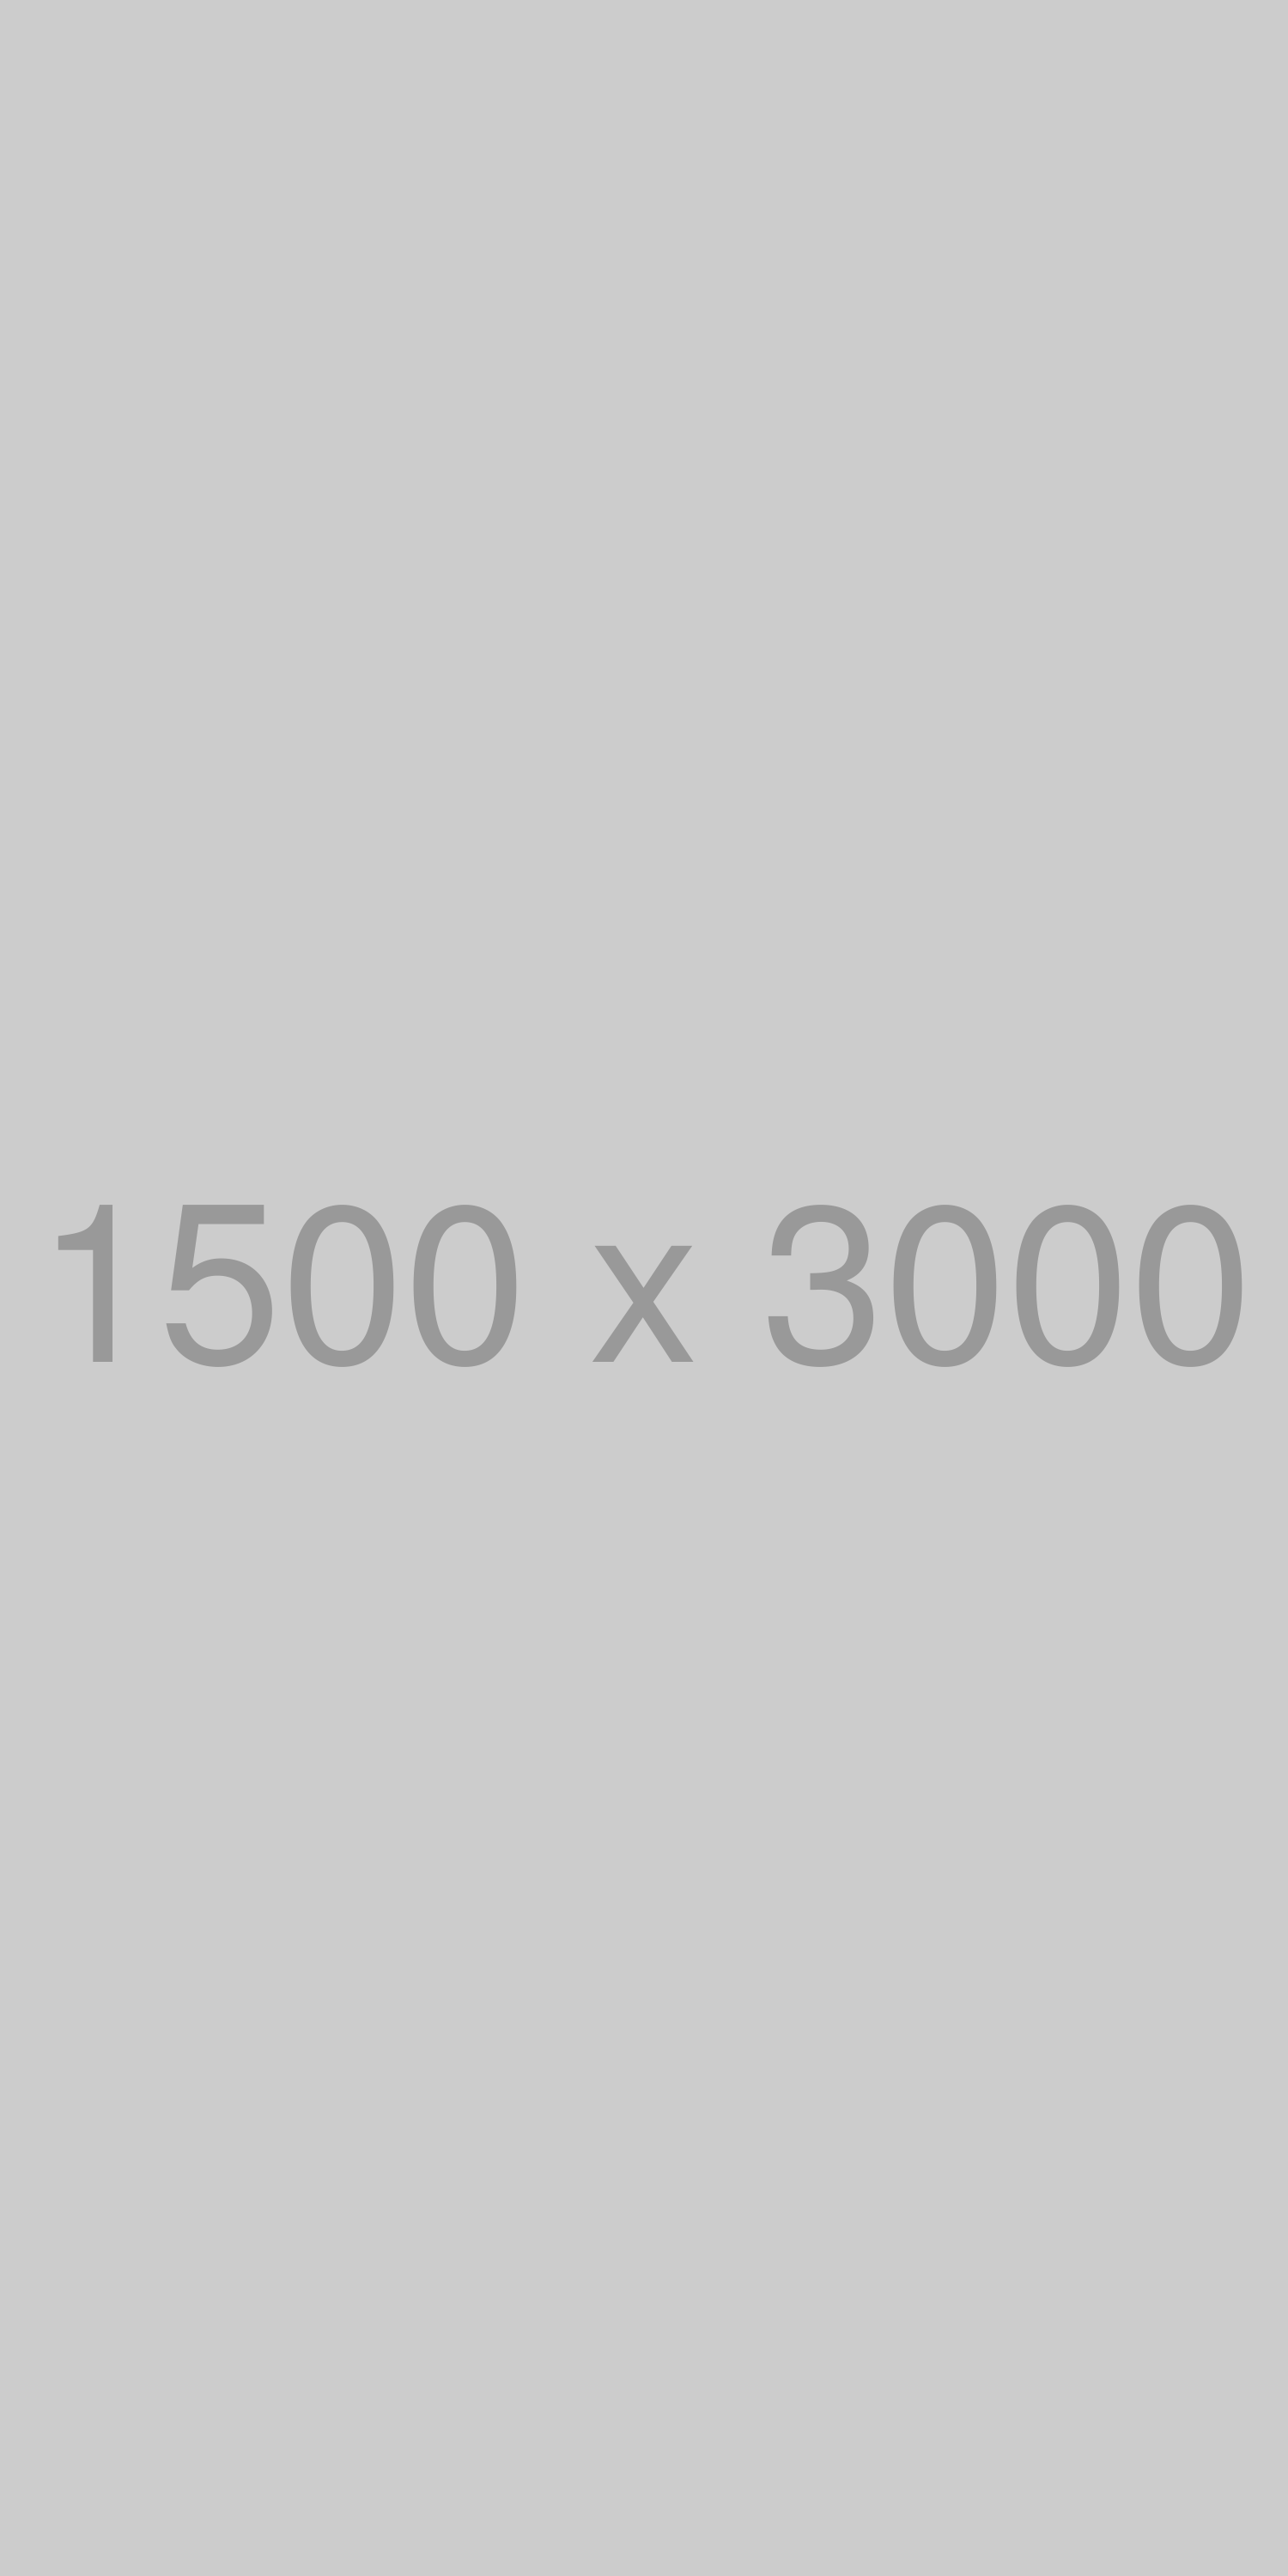 test/1500x3000